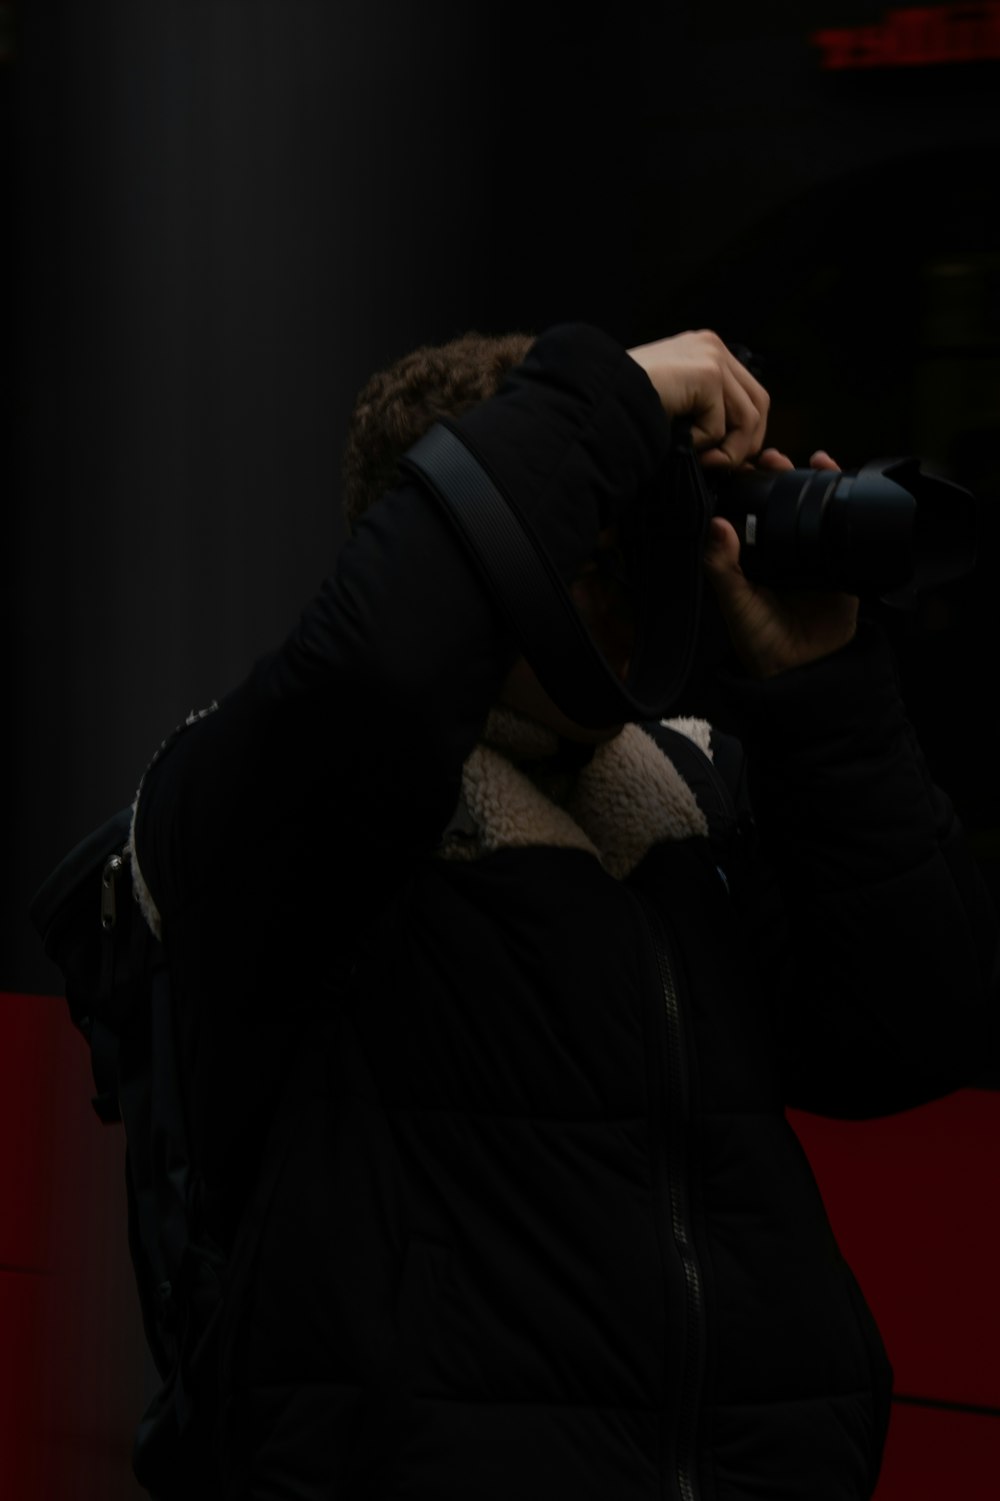 黒いデジタル一眼レフカメラを持つ黒いジャケットの男